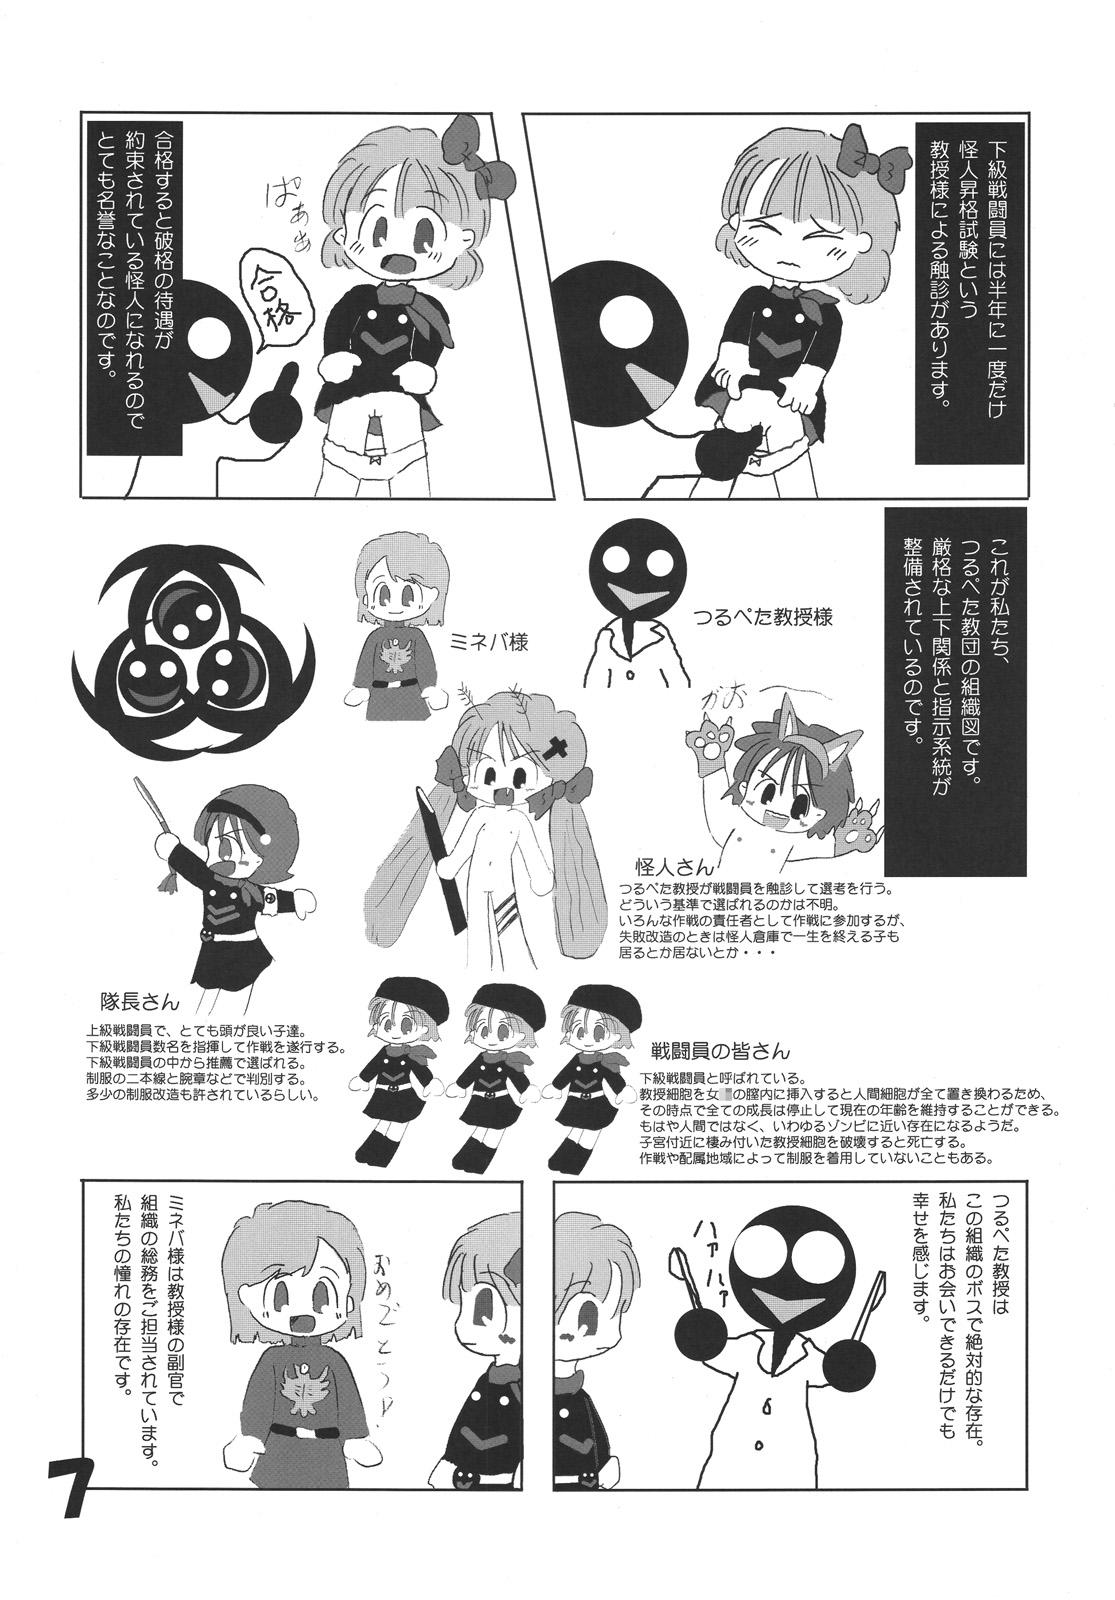 Thief Tsurupeta Kenkyuu Houkokusho "Kakyuu Sentou In no Isshou" - Turupeta Research Report Mulher - Page 6